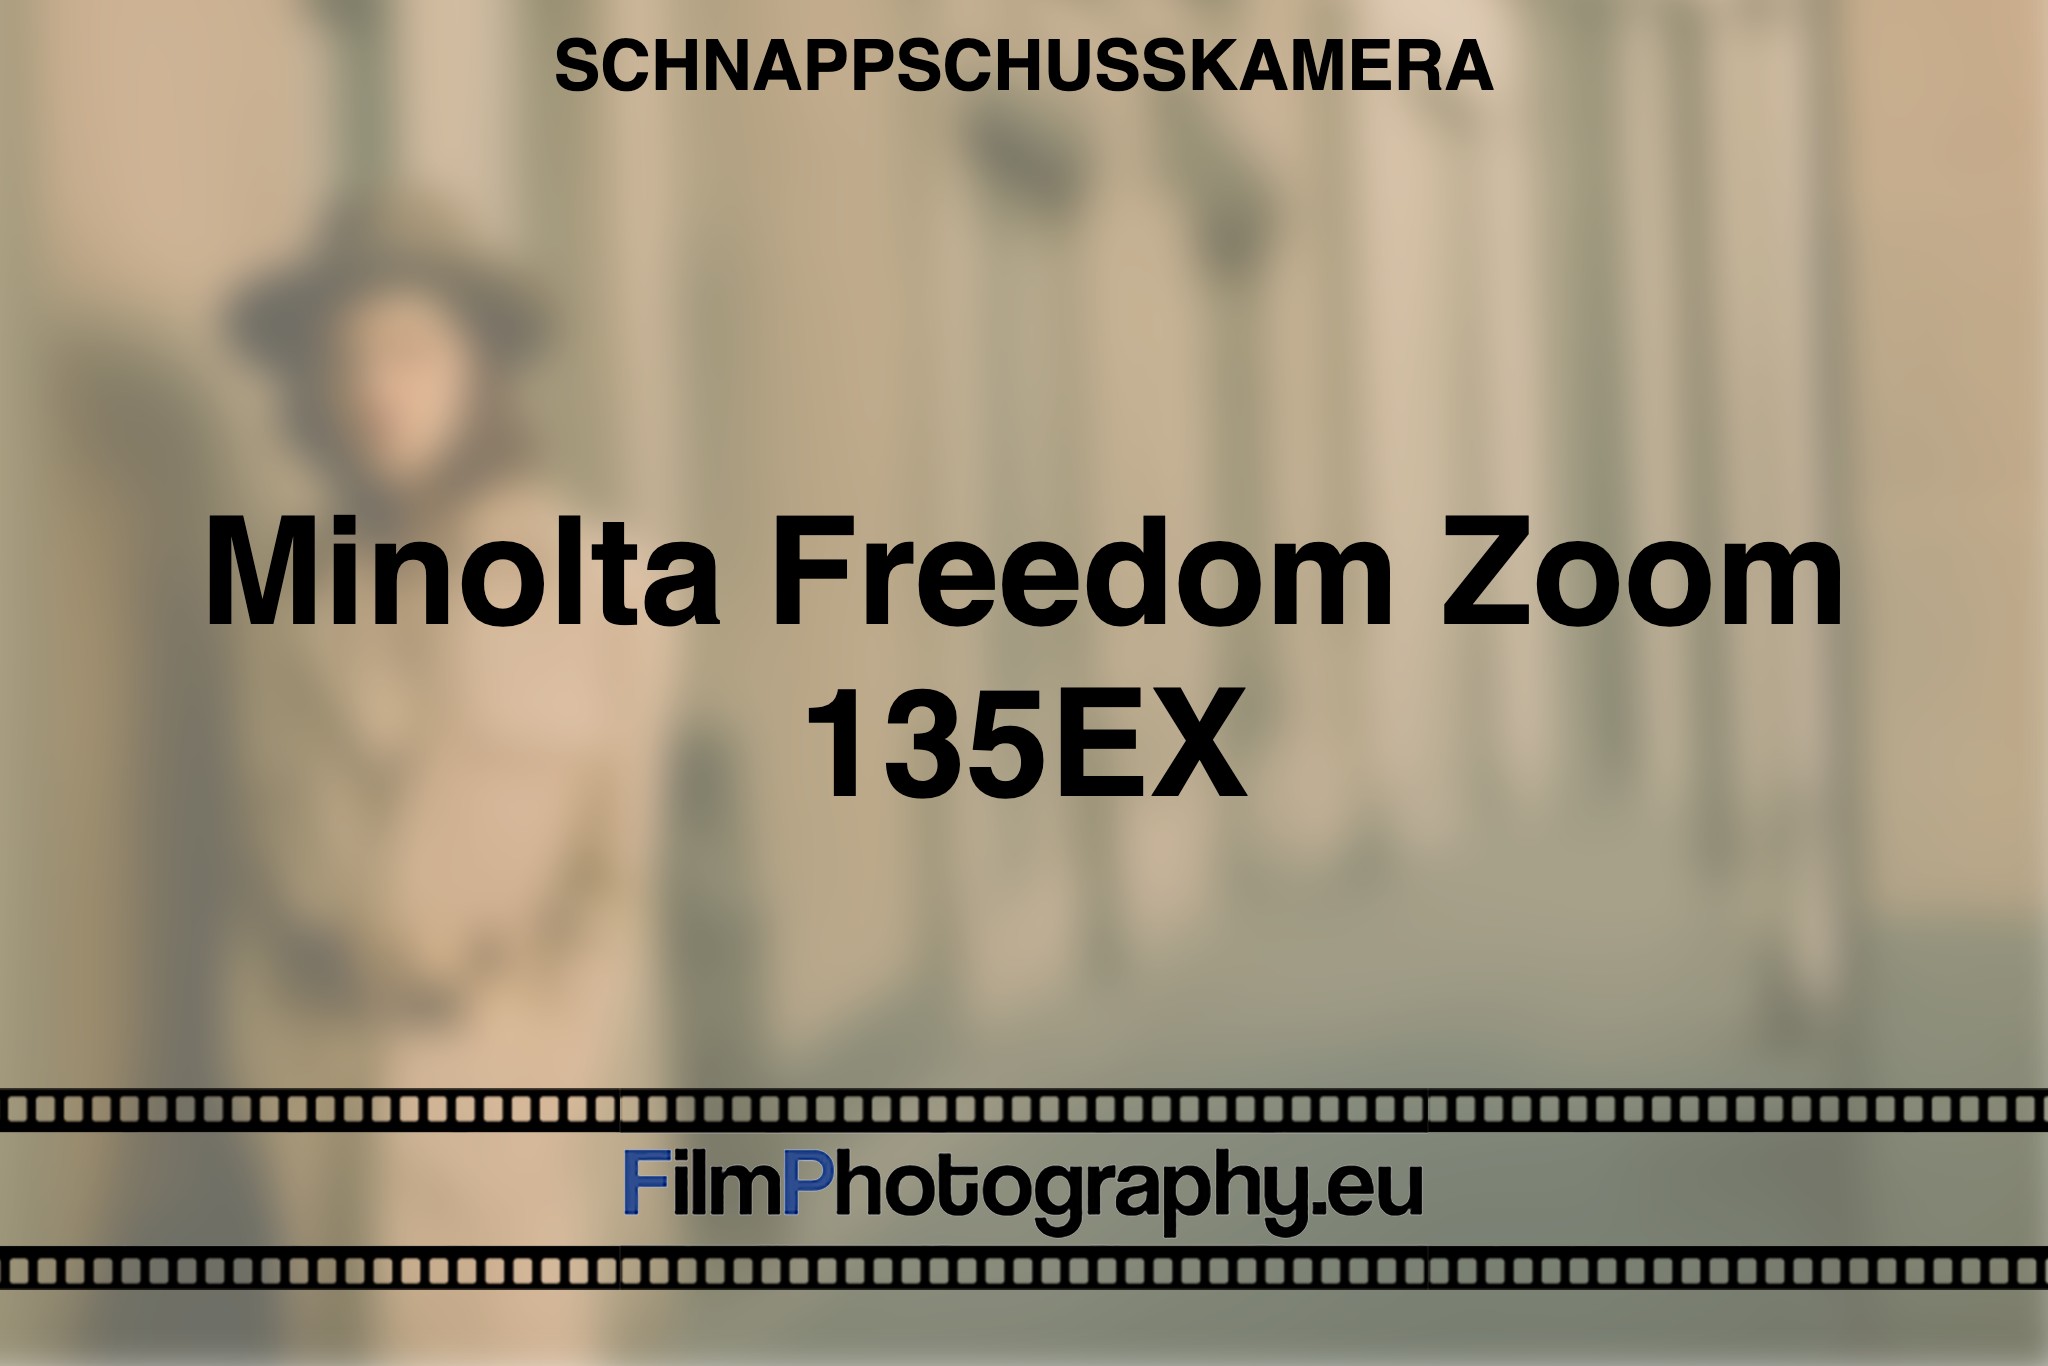 minolta-freedom-zoom-135ex-schnappschusskamera-bnv